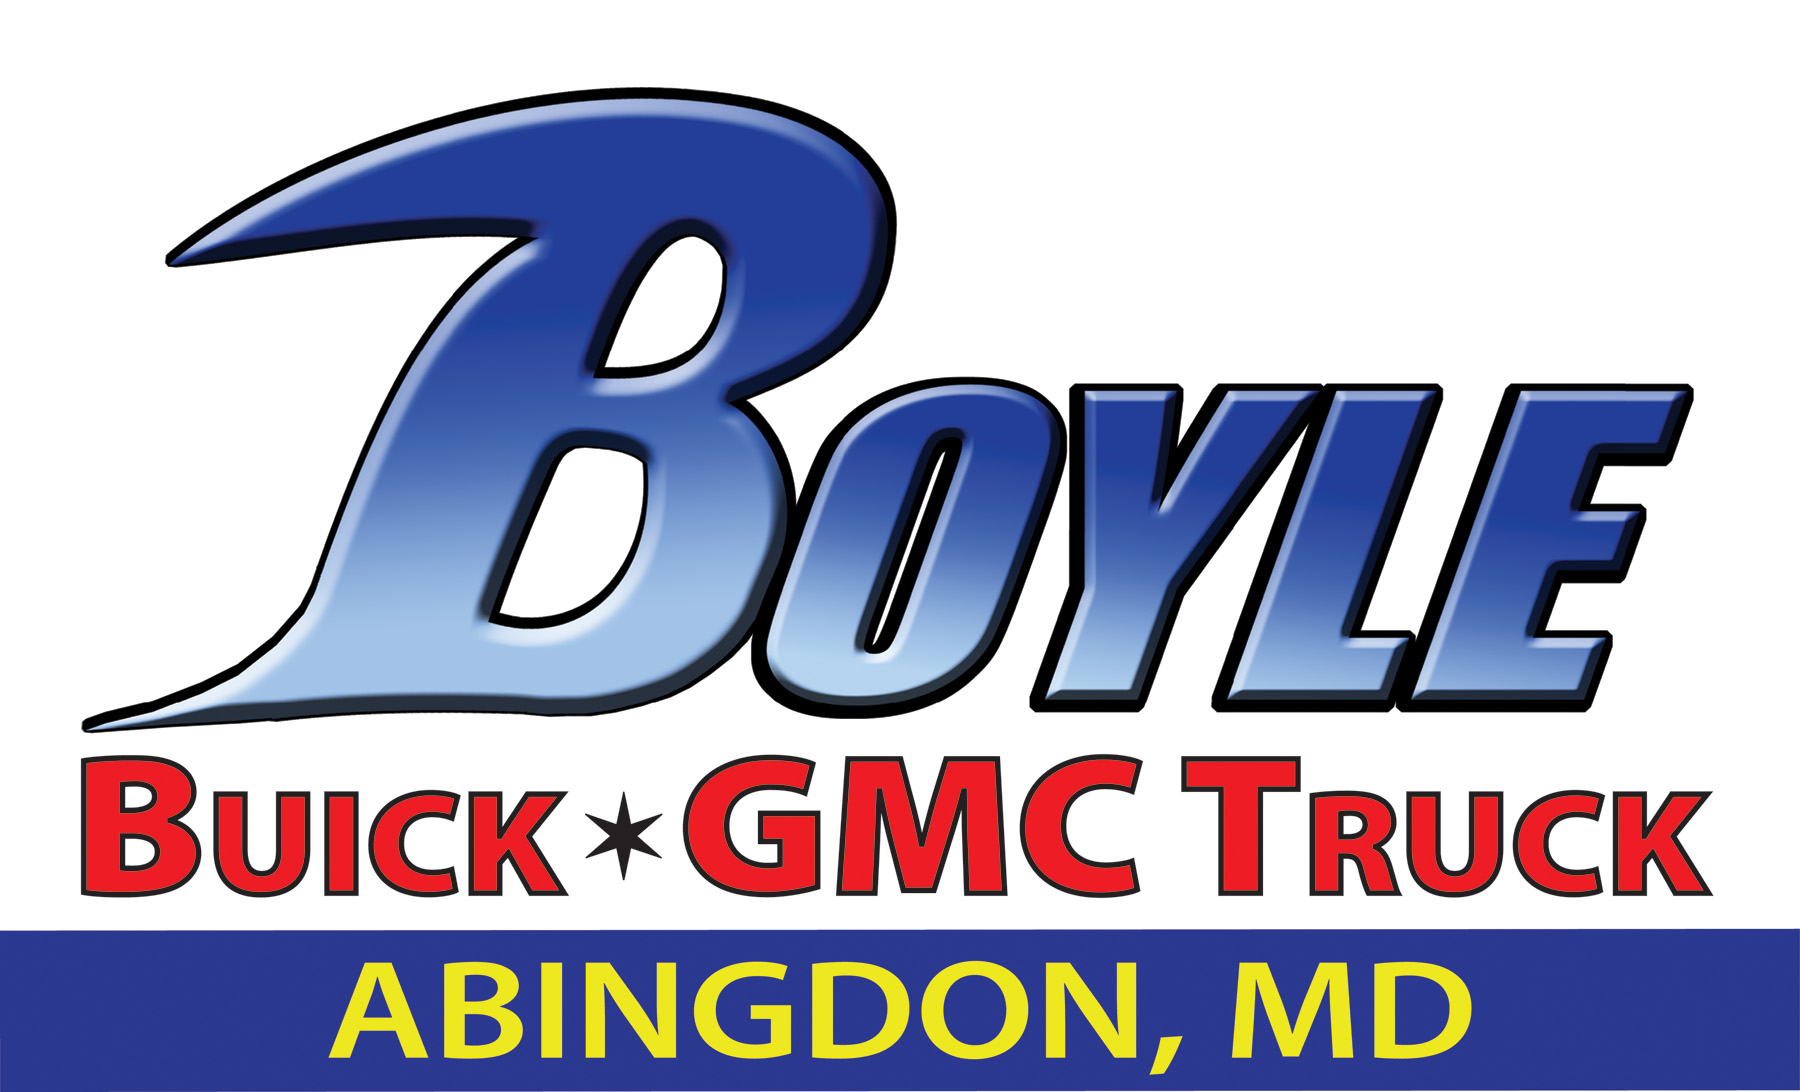 mdm boyle buick logo